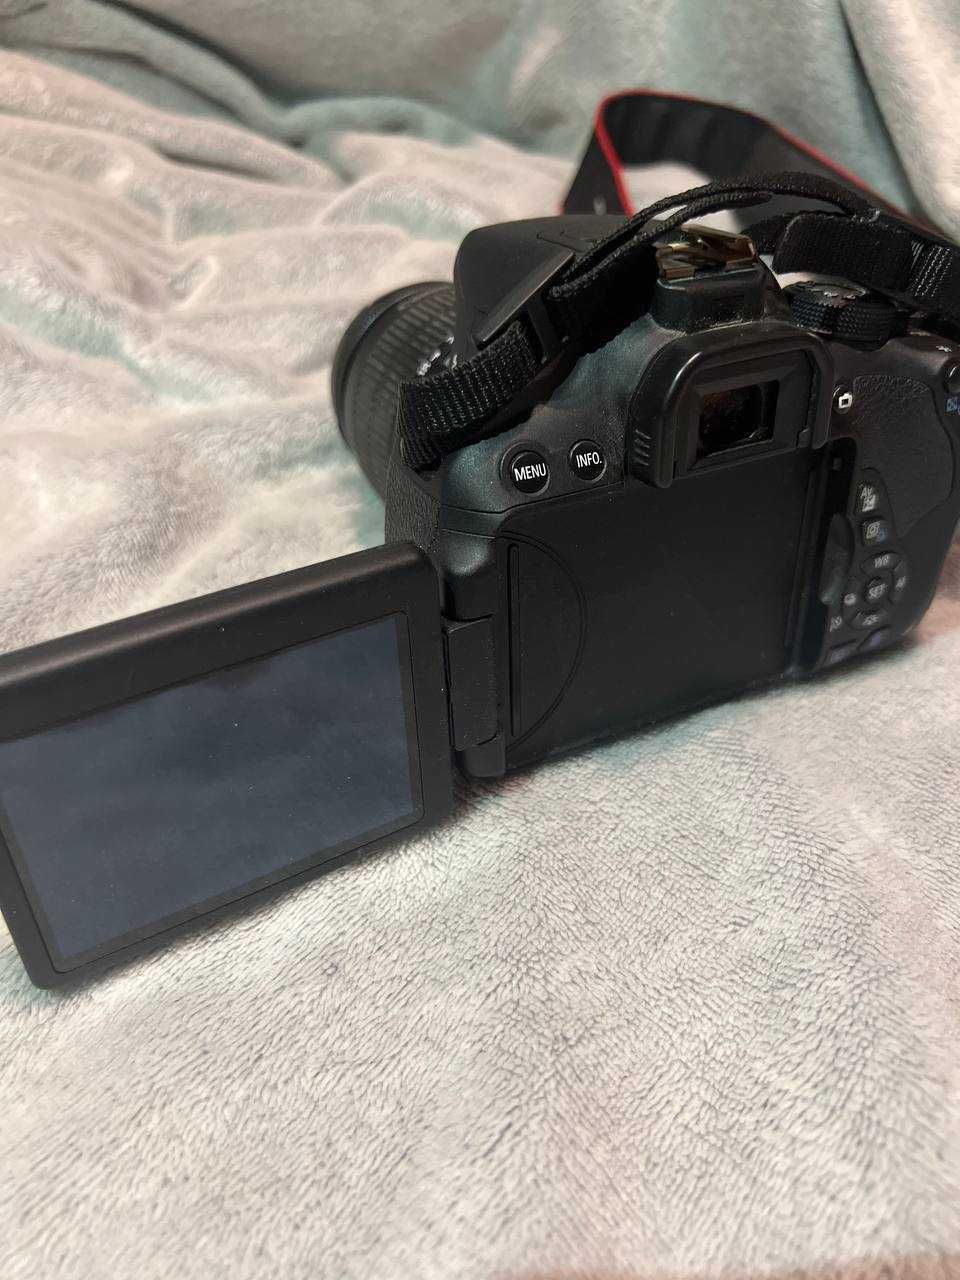 Дзеркальний фотоапарат Canon EOS 700D kit (18-55mm)